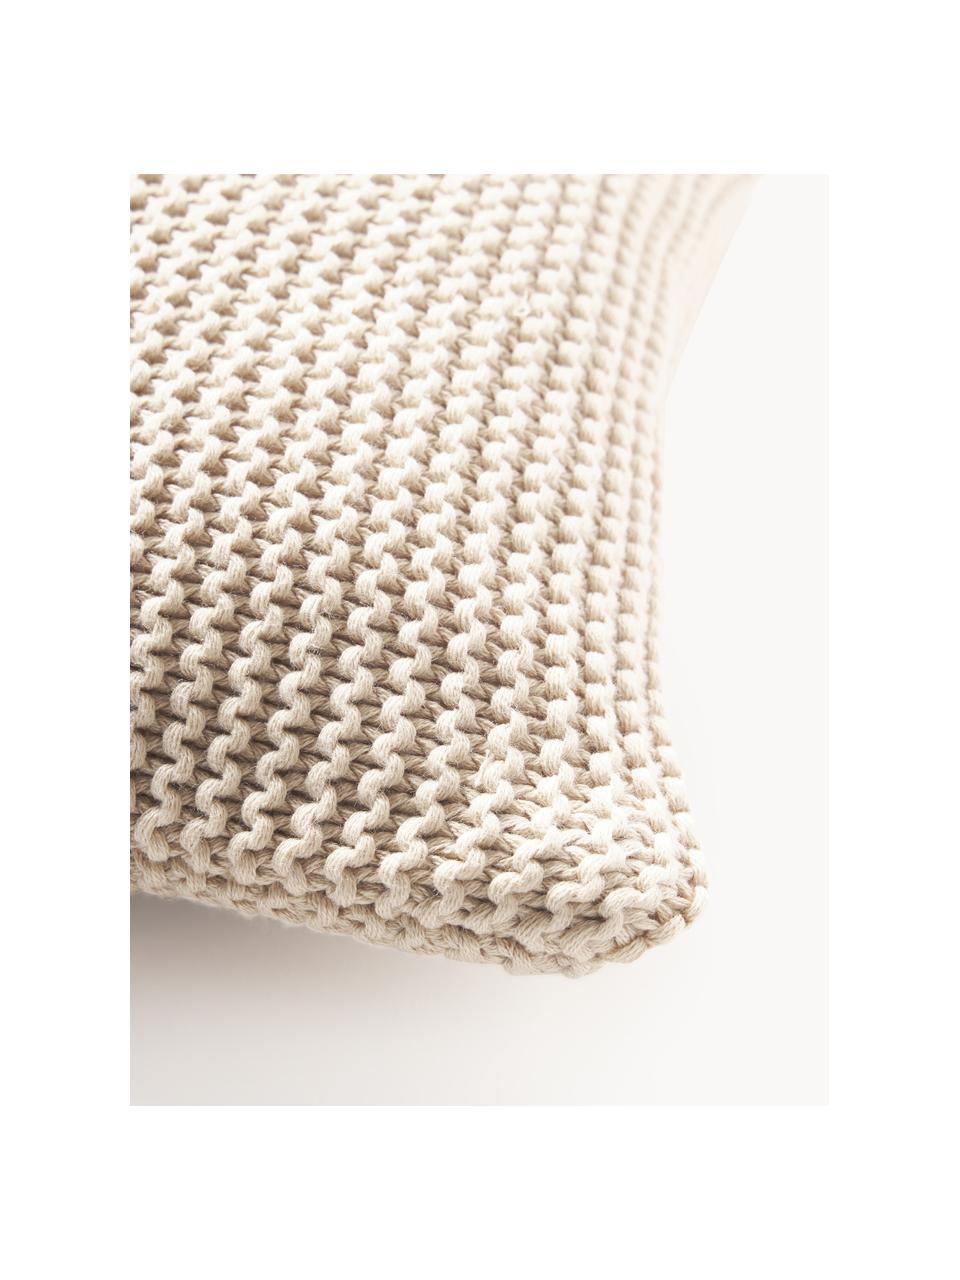 Copricuscino a maglia in cotone organico Adalyn, 100% cotone organico certificato GOTS, Beige chiaro, Larg. 40 x Lung. 40 cm